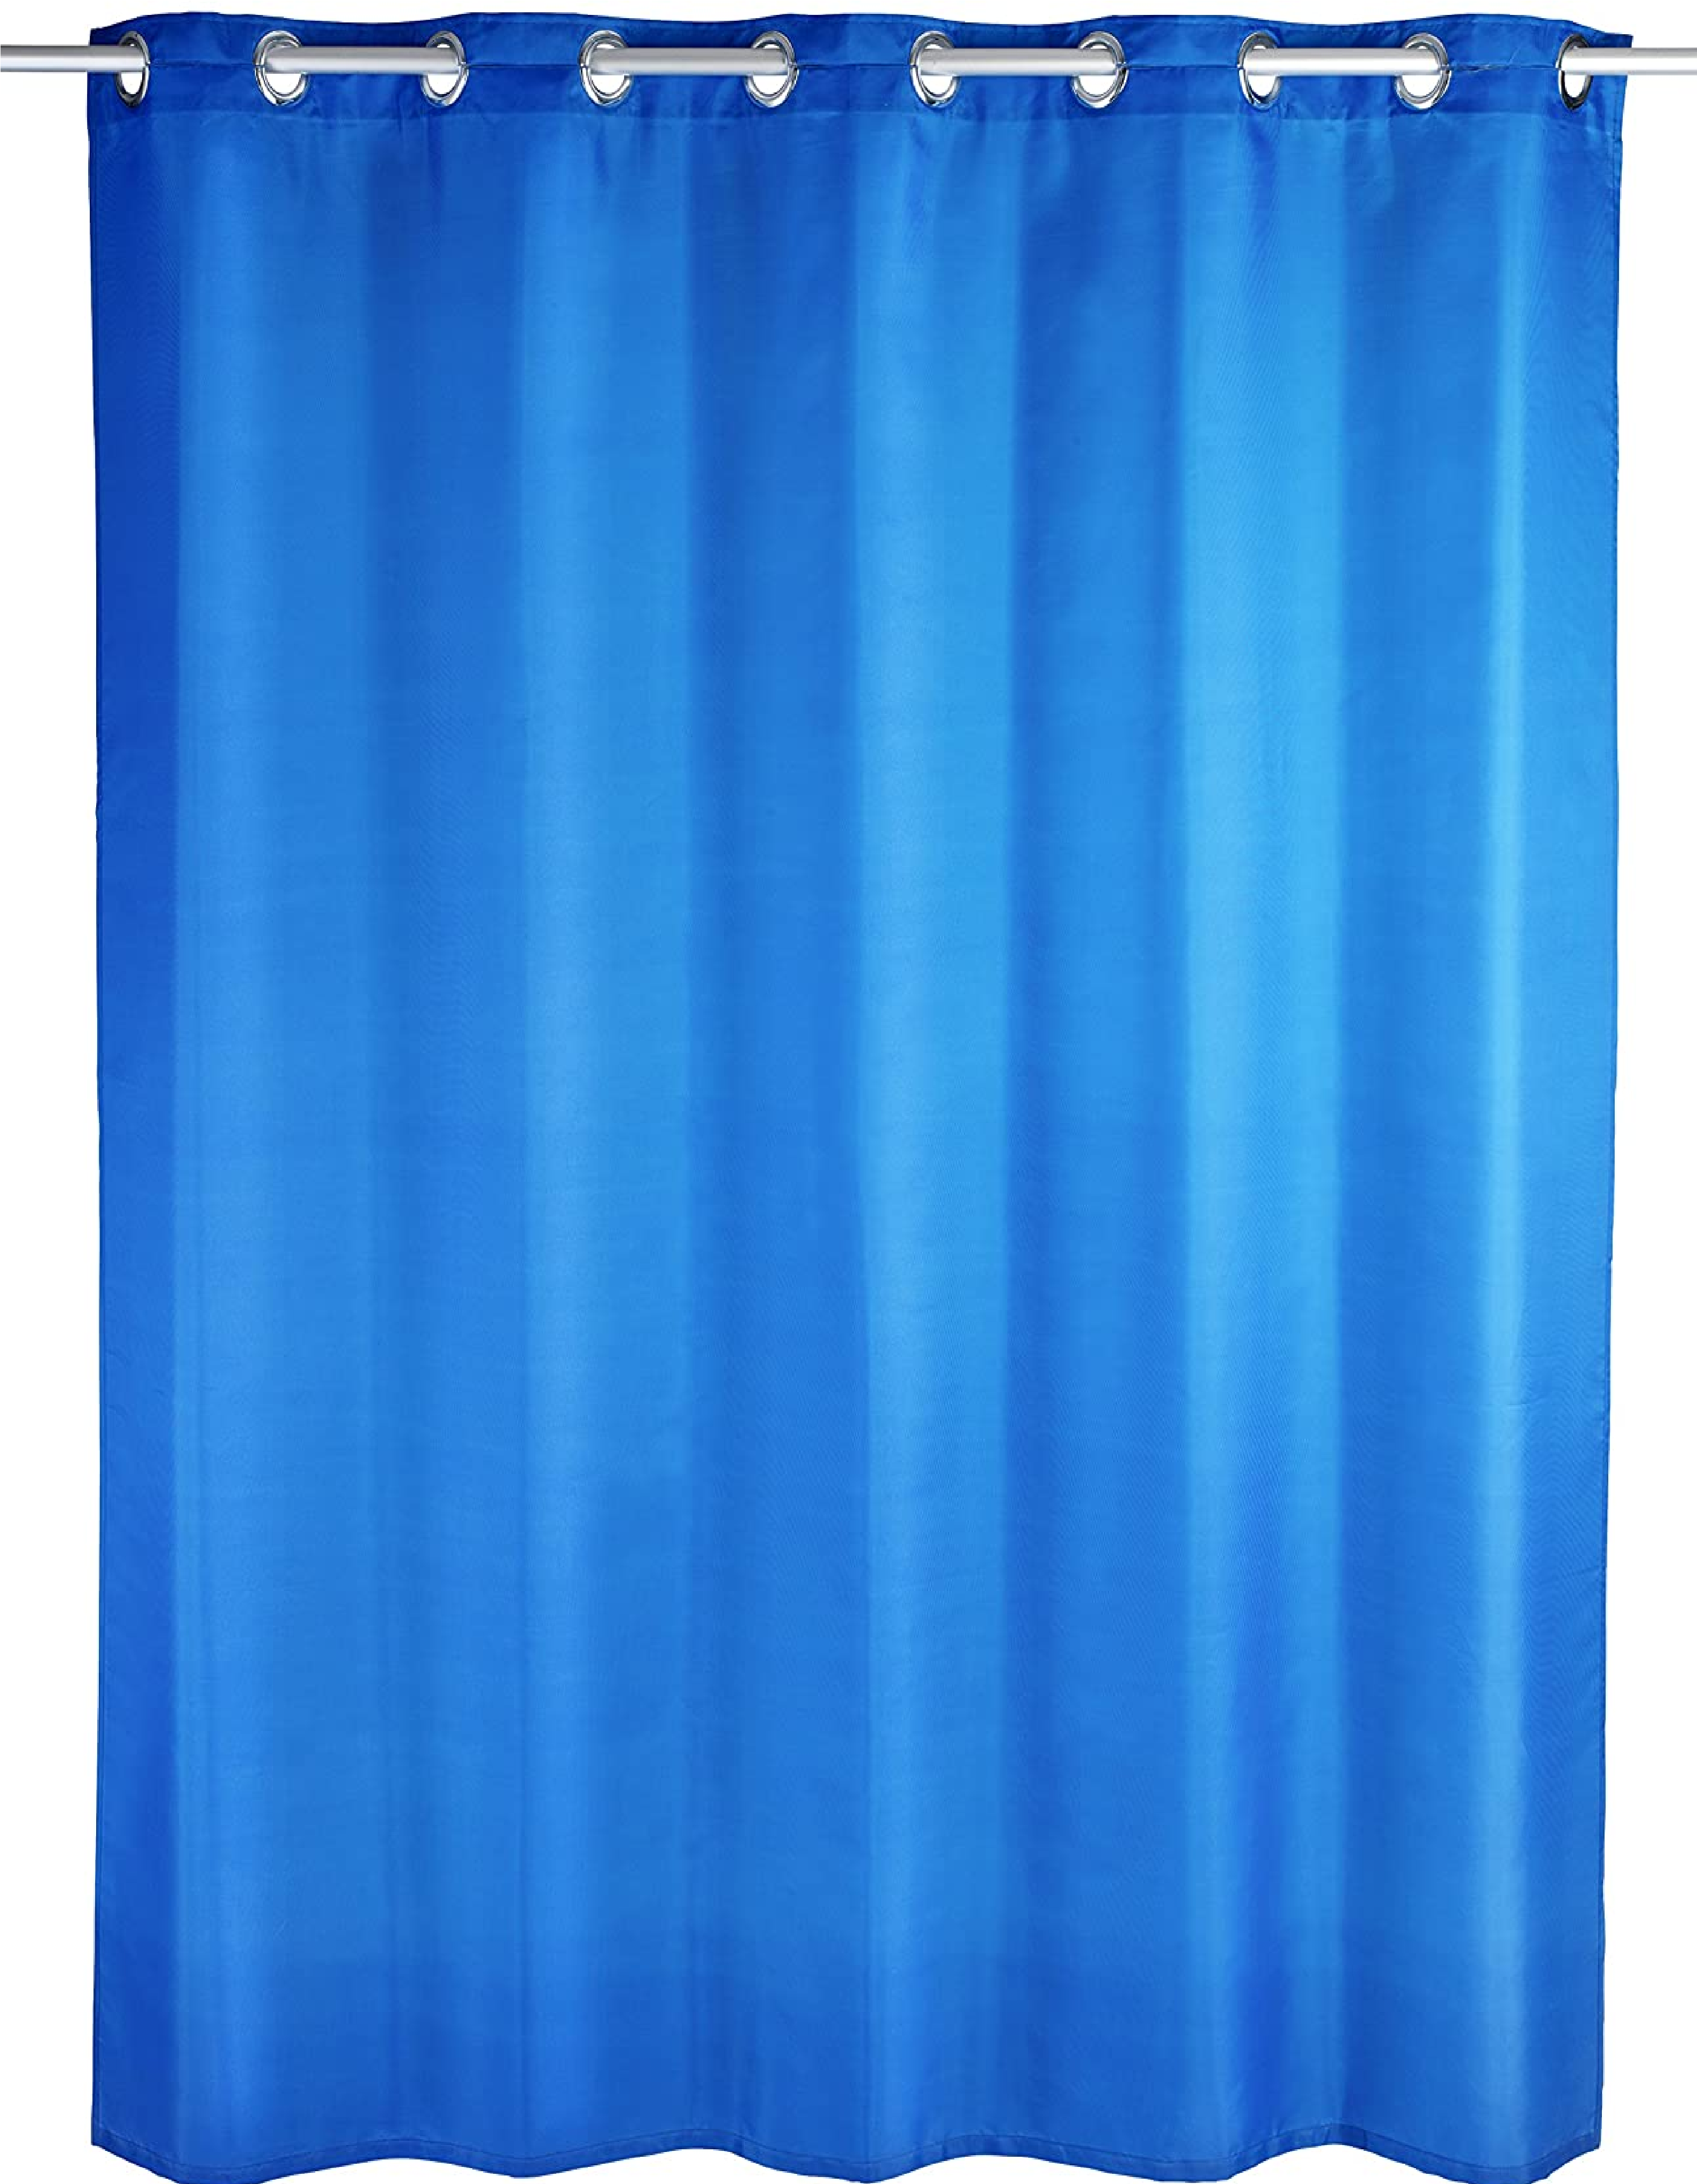 Duschvorhang Comfort Flex blau, waschbar,wasserabweisend, 180 x 200 cm